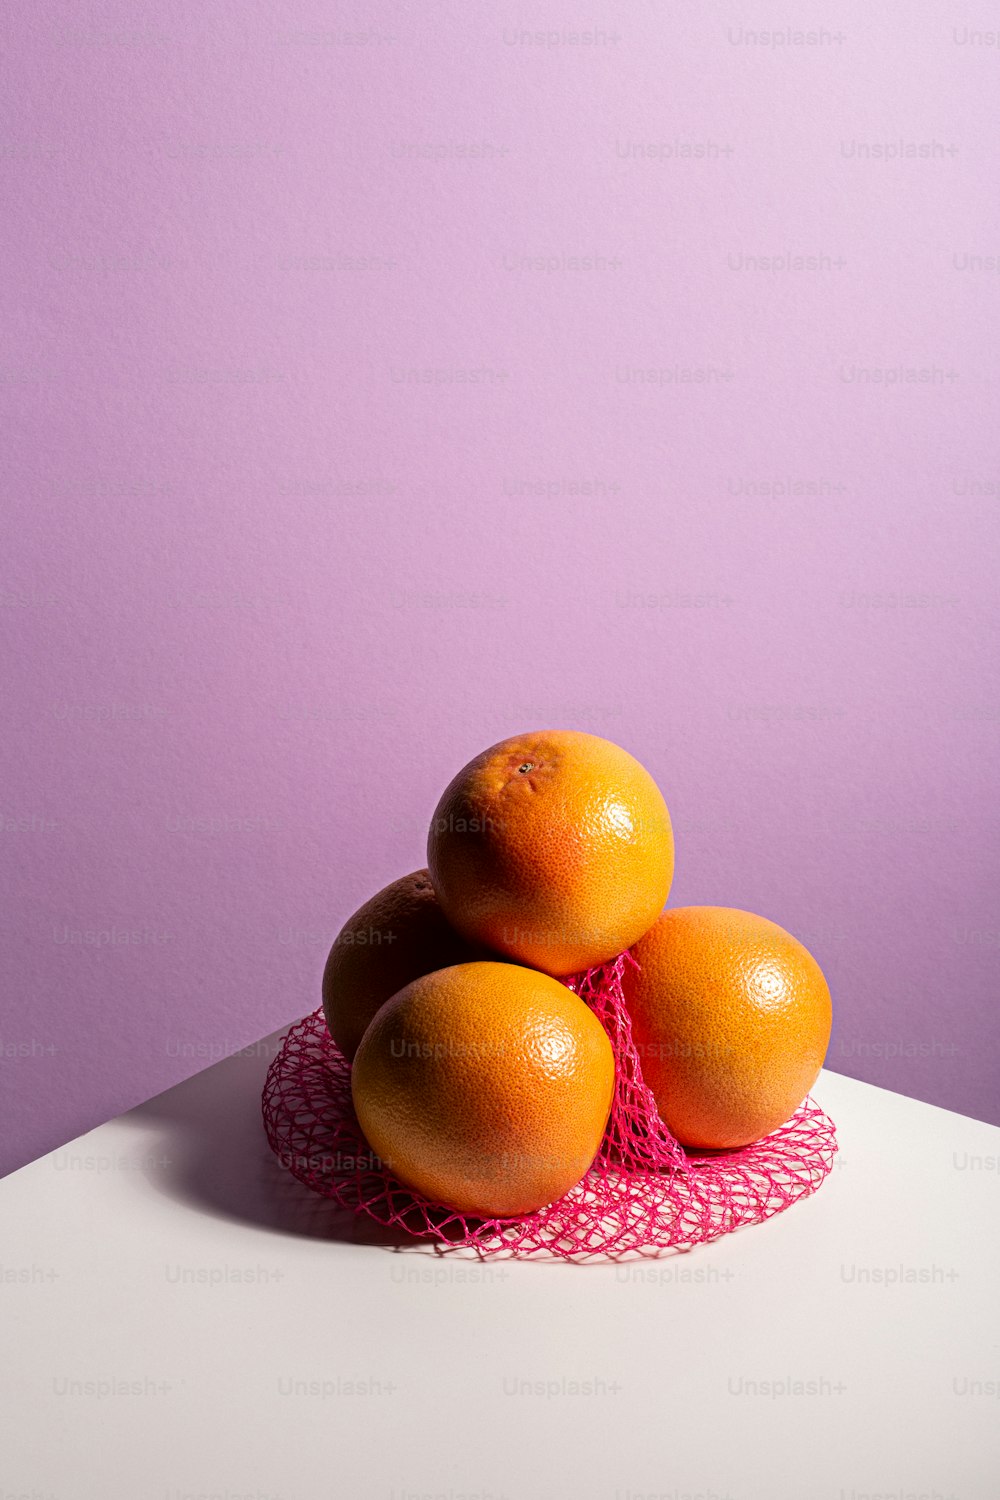 하얀 테이블 위에 놓인 오렌지 더미